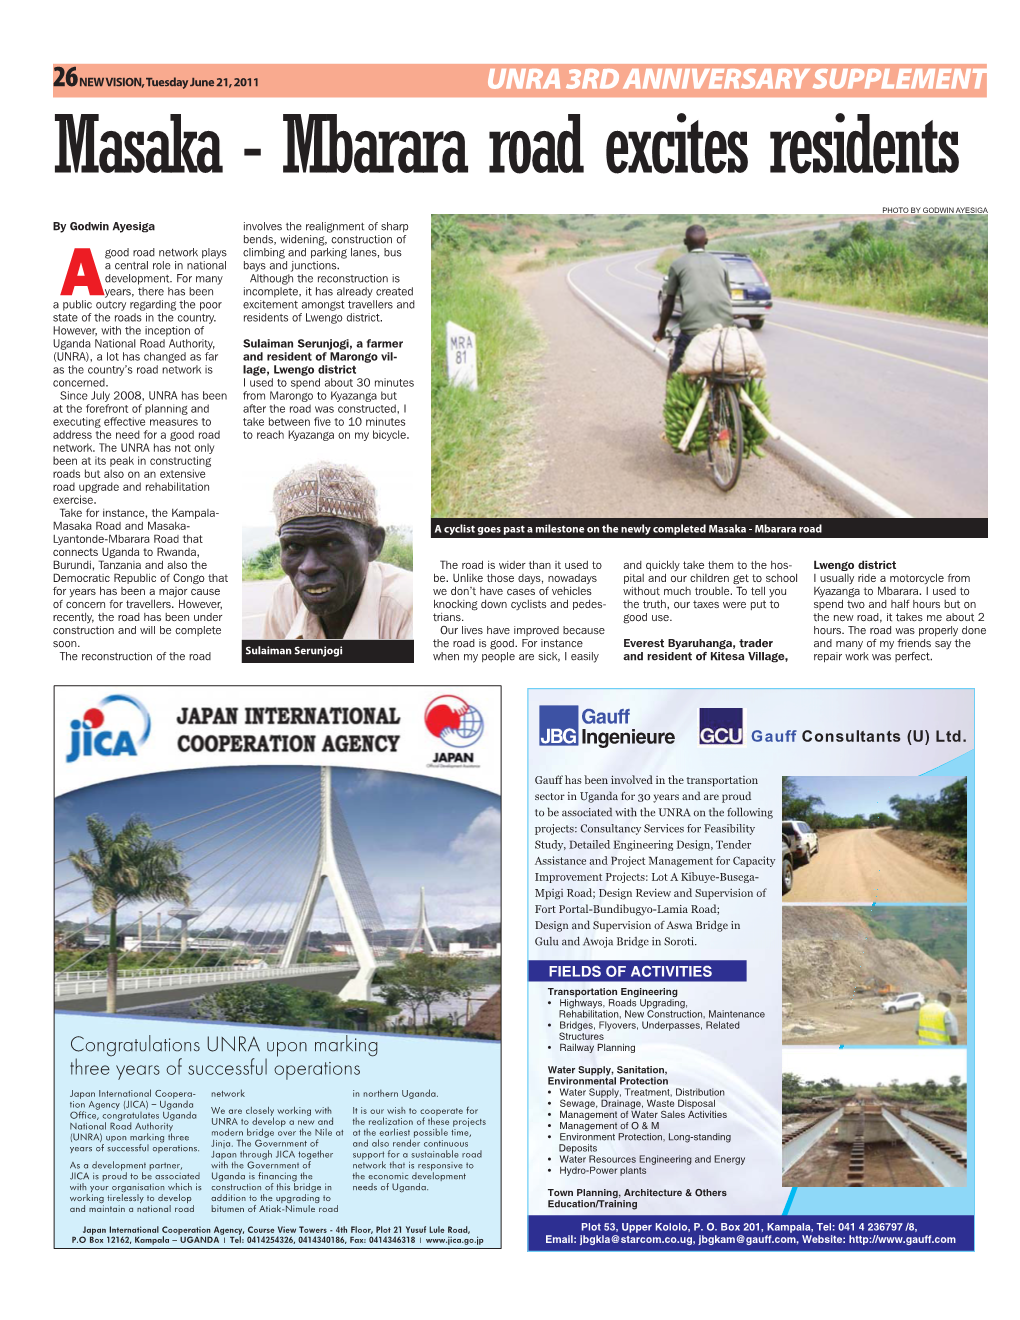 Masaka - Mbarara Road Excites Residents